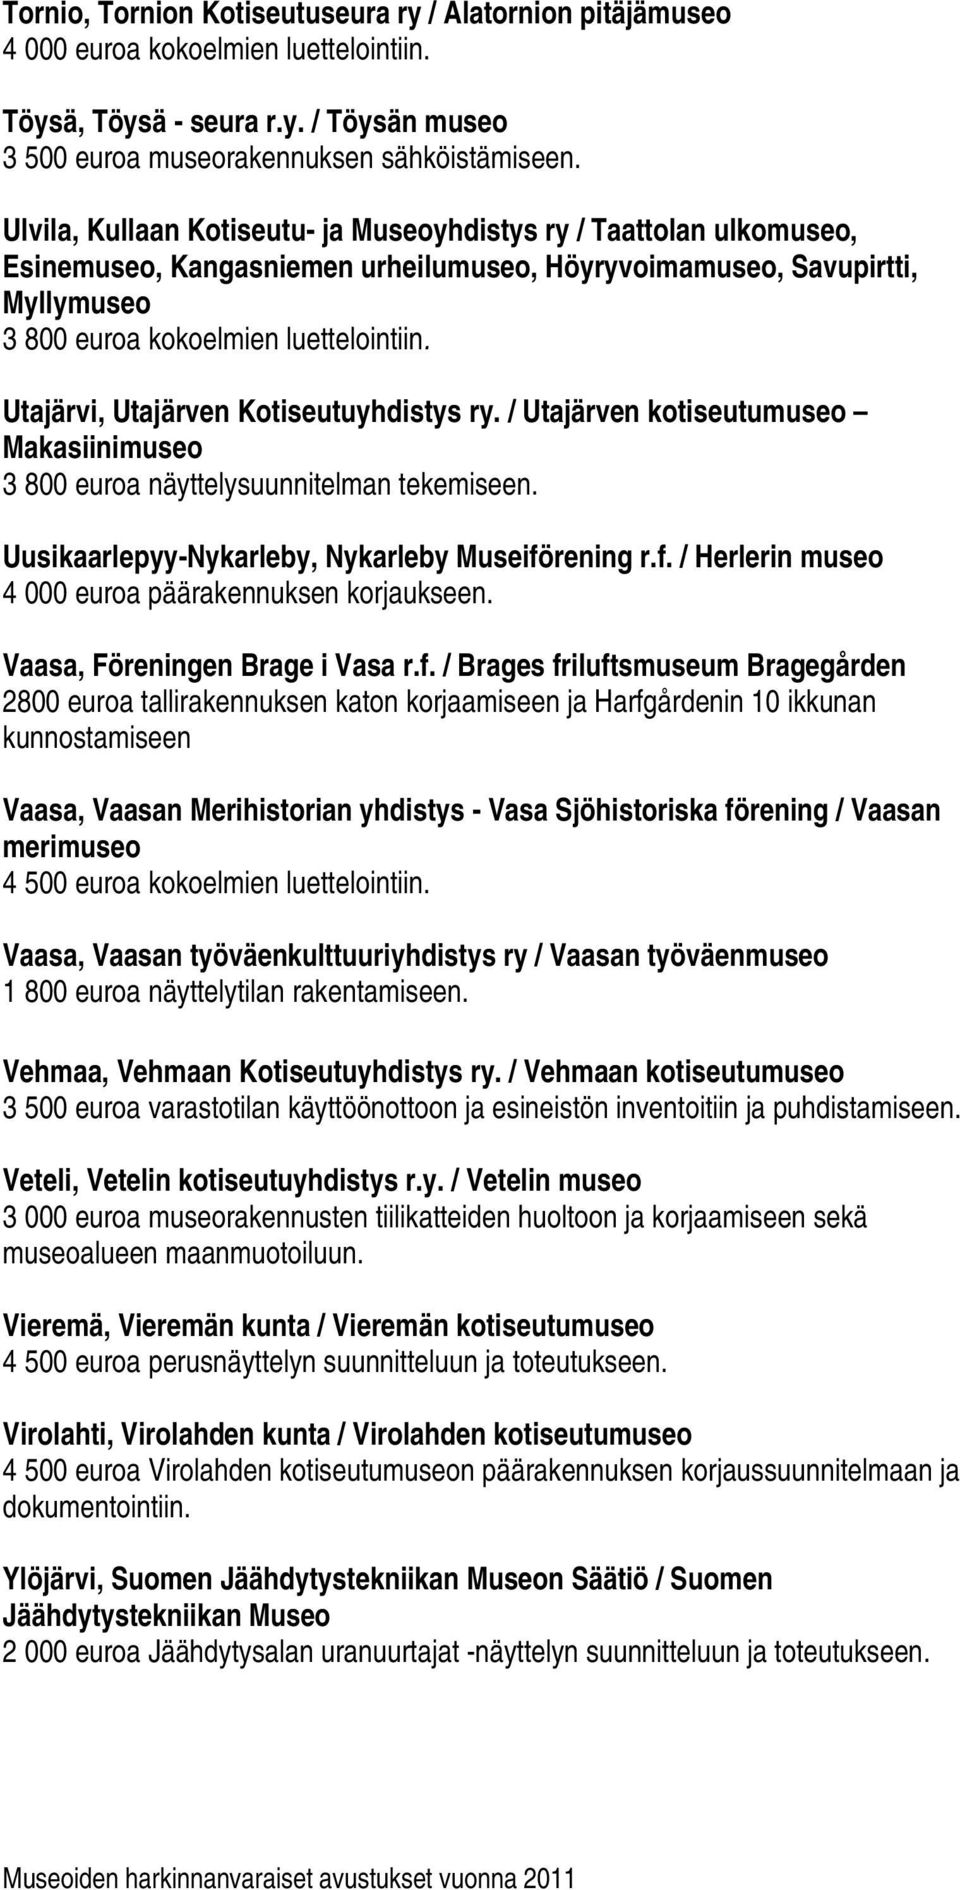 Utajärvi, Utajärven Kotiseutuyhdistys ry. / Utajärven kotiseutumuseo Makasiinimuseo 3 800 euroa näyttelysuunnitelman tekemiseen. Uusikaarlepyy-Nykarleby, Nykarleby Museifö